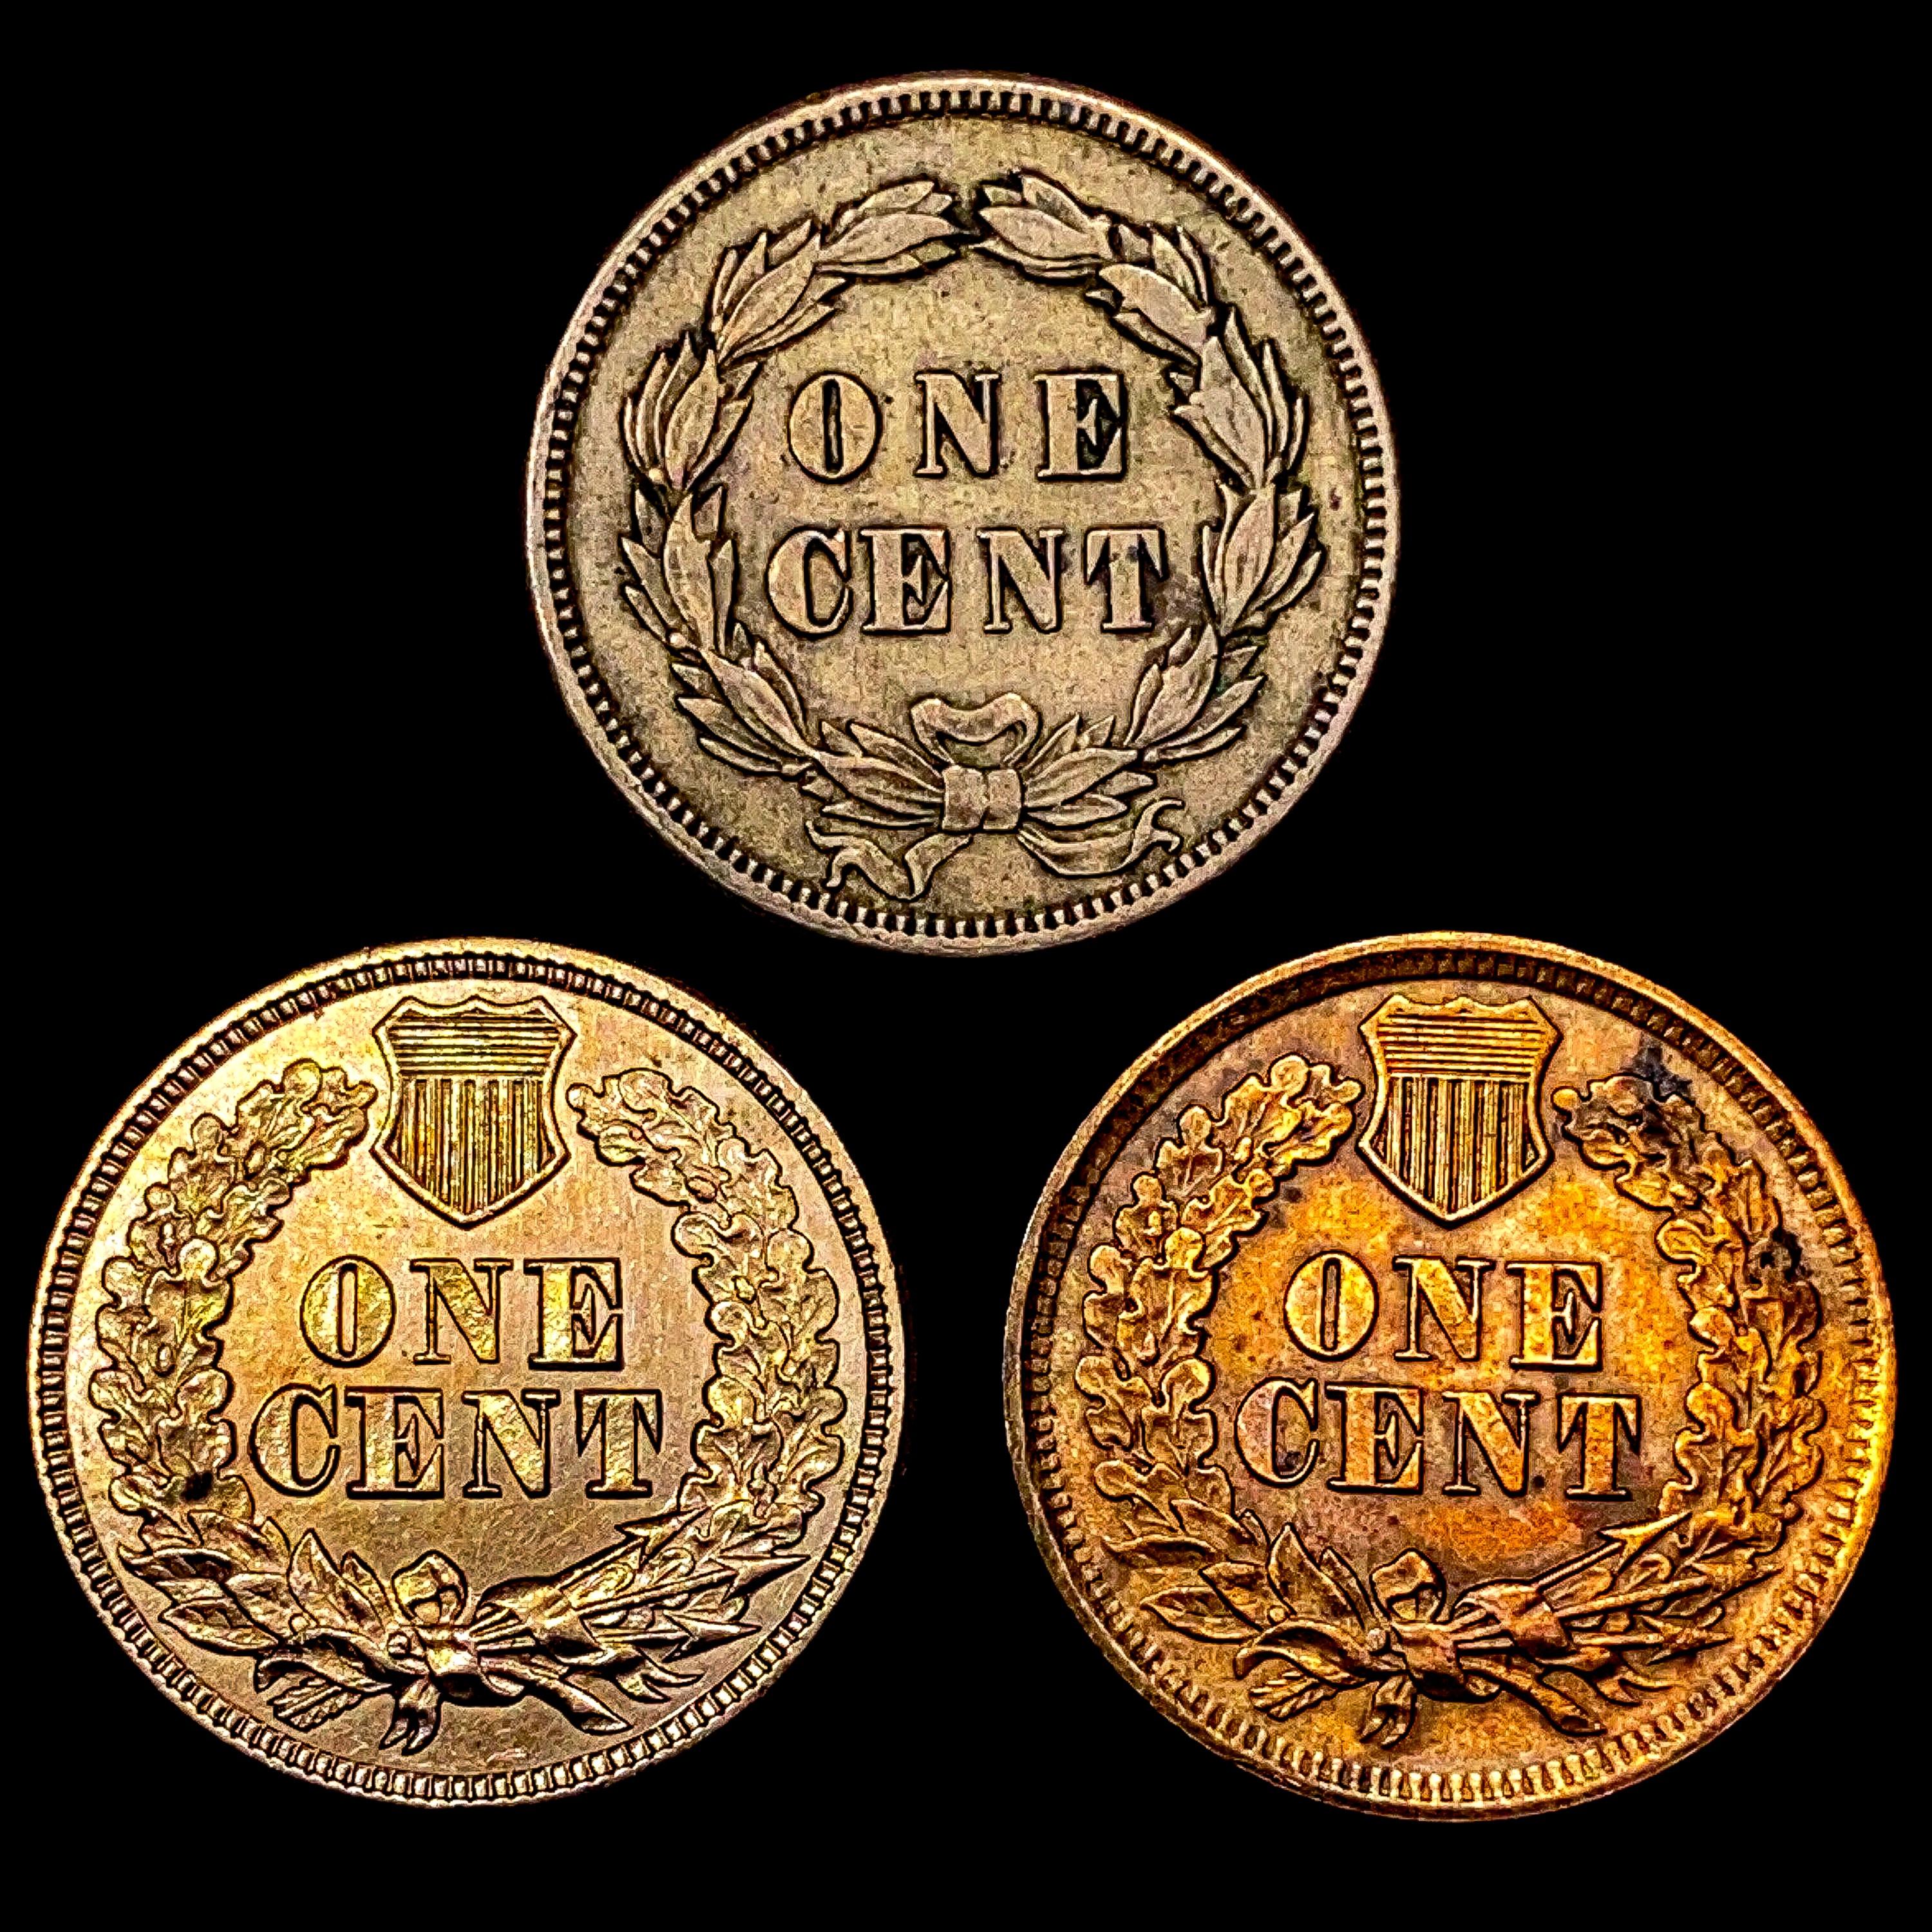 [3] Indian Head Cents [1859, 1863, 1865] UNCIRCULA